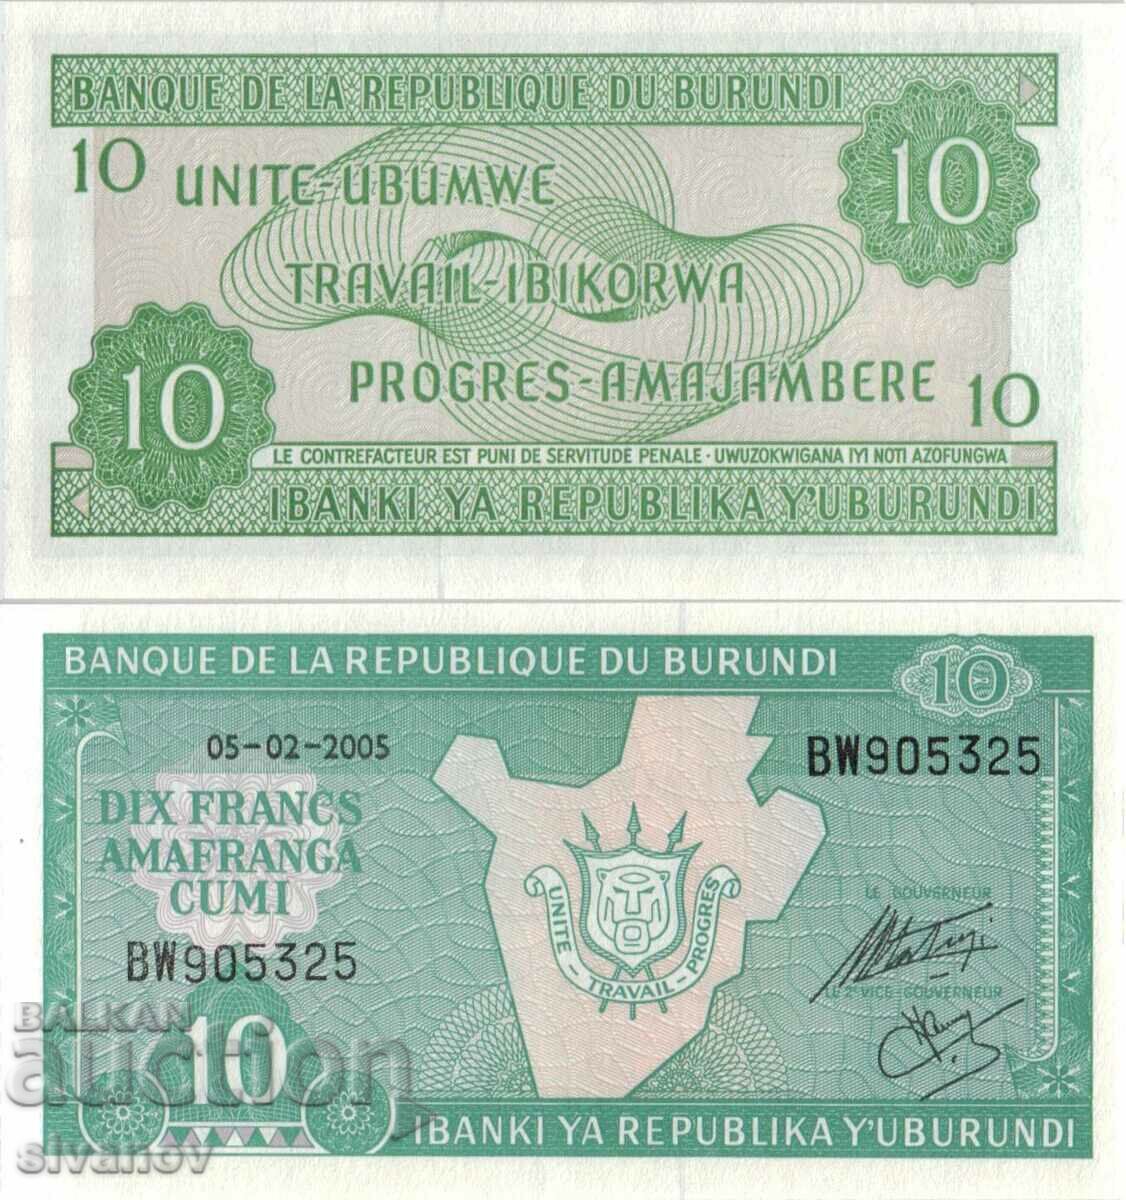 Burundi 10 Francs 2005 UNC #4802